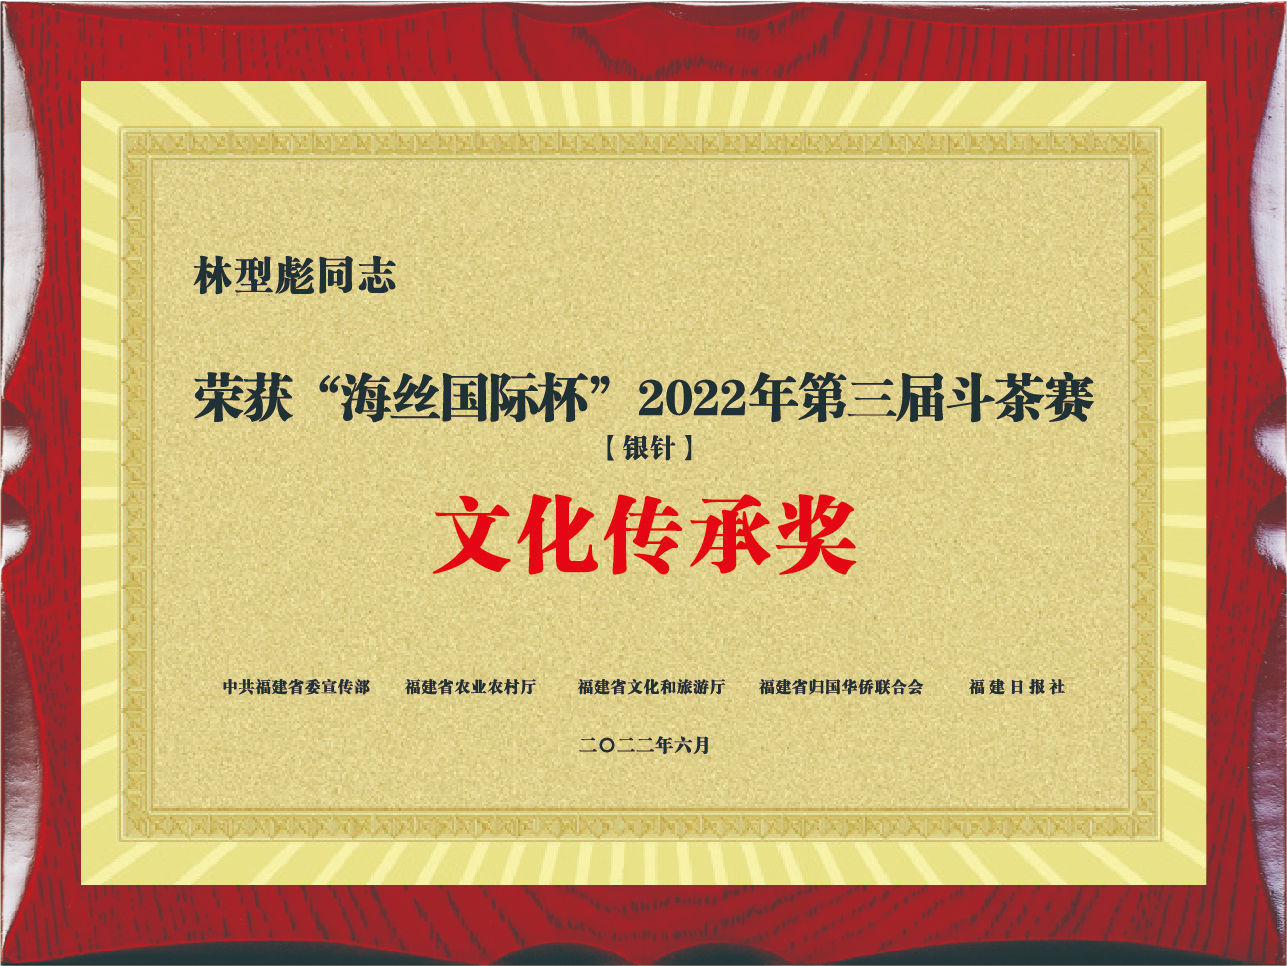 林型彪荣获“海斯国际杯”2022年第三届斗茶赛文化传承奖